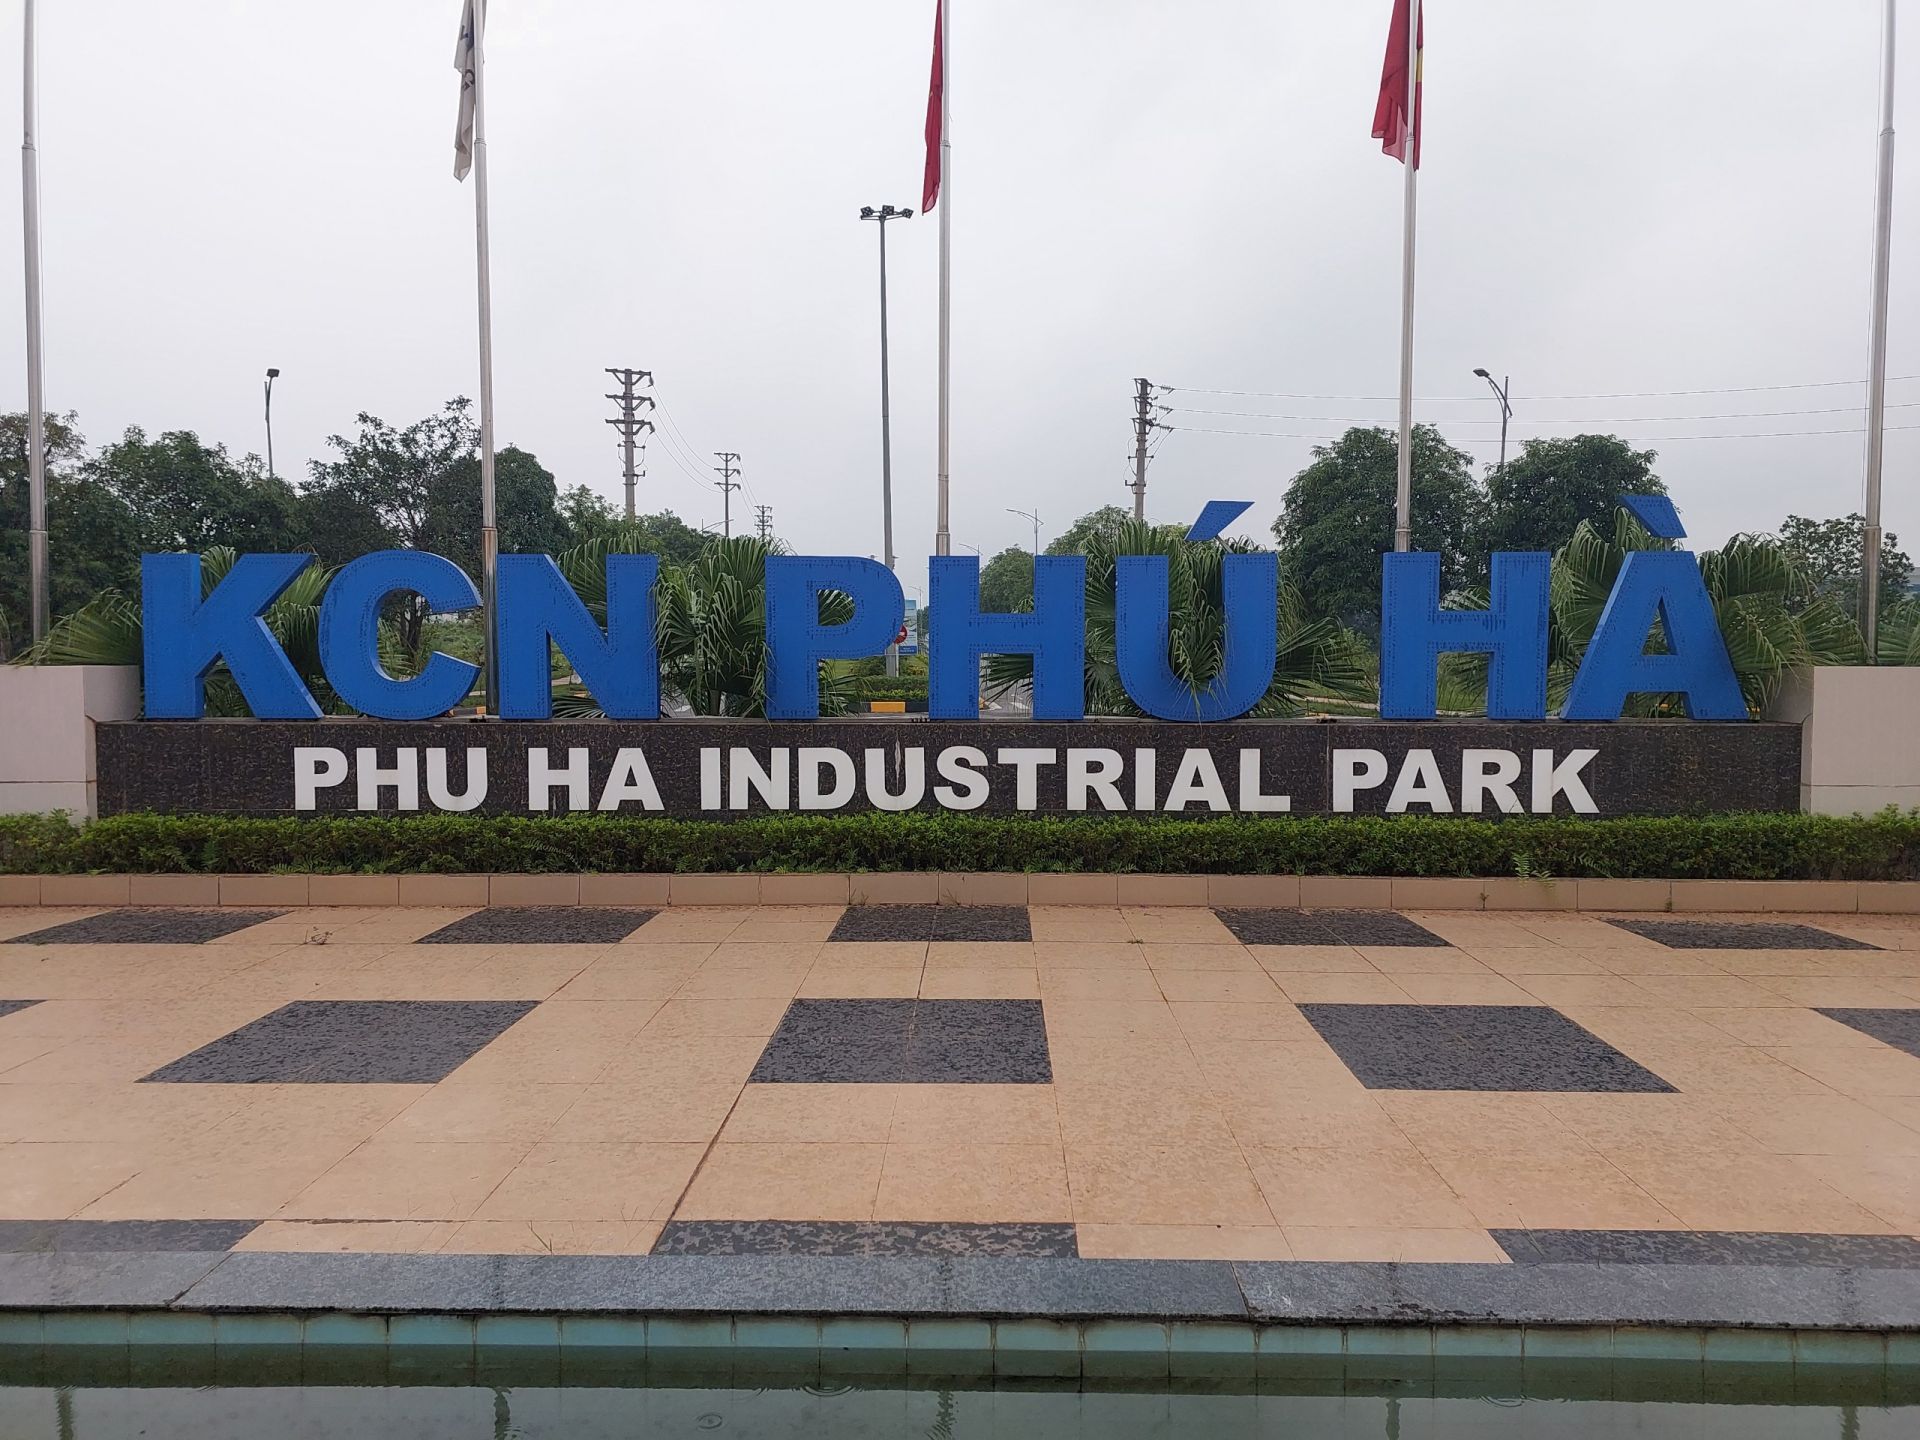 Khu công nghiệp Phú Hà, thị xã Phú Thọ